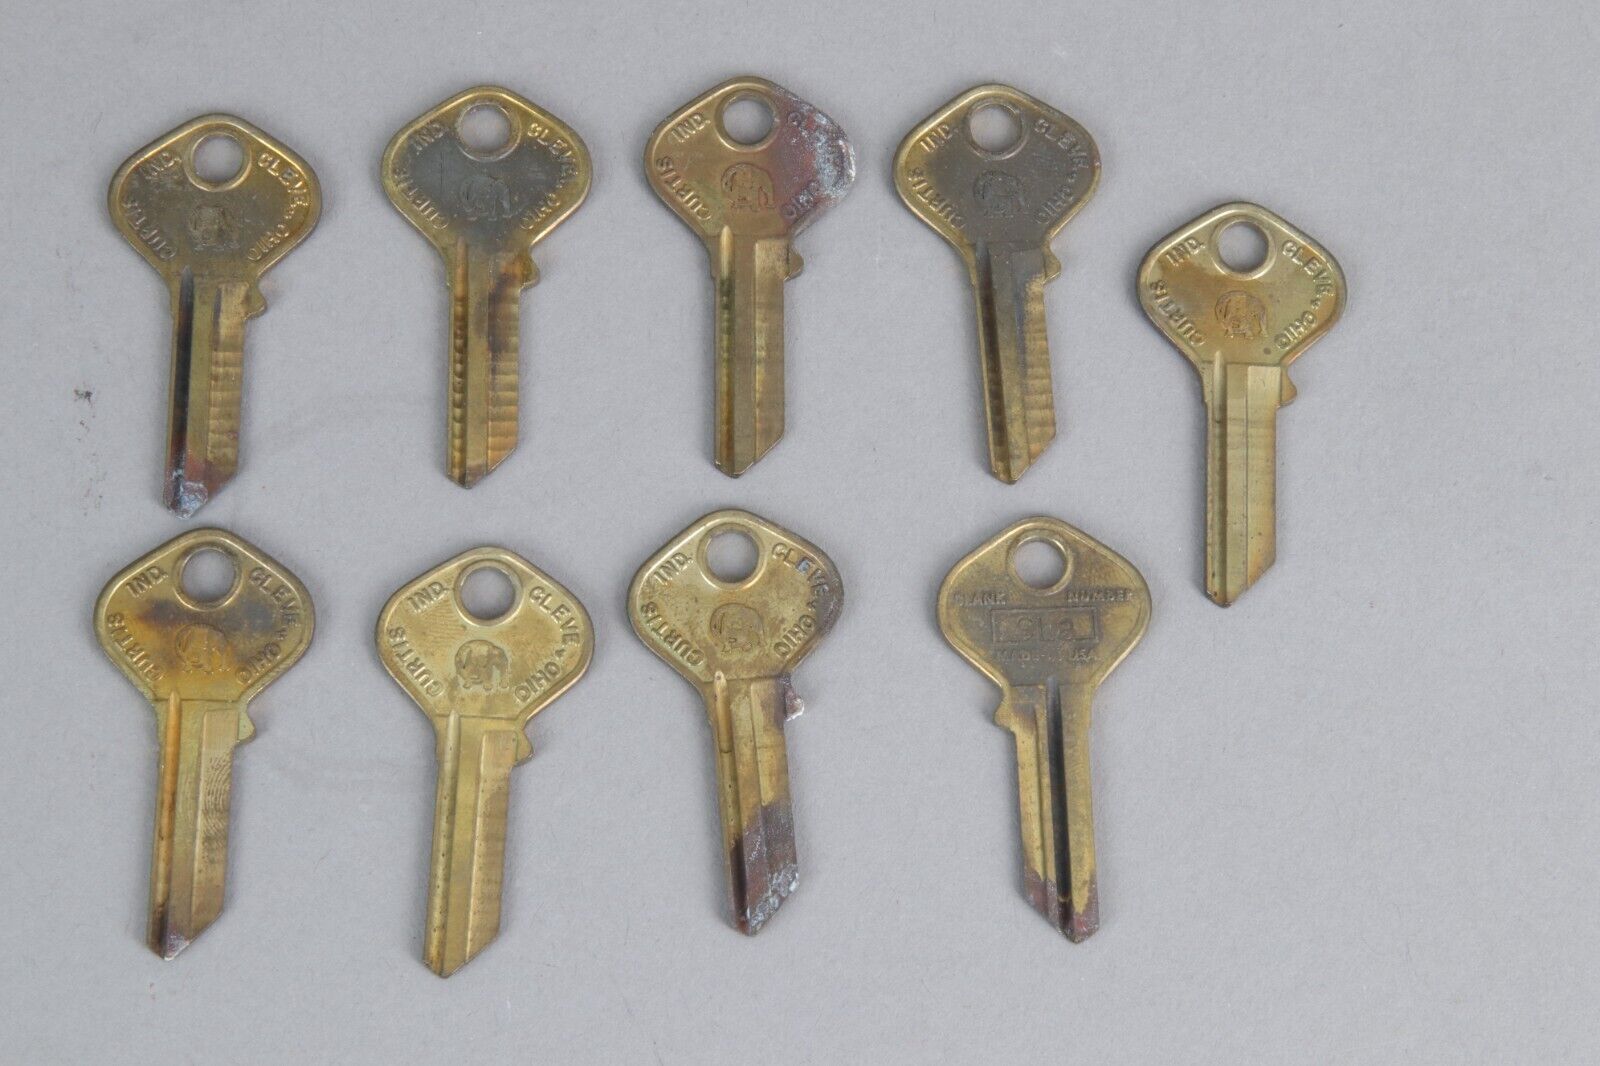 Lot of 9 vintage NOS Curtis SL8 key blanks